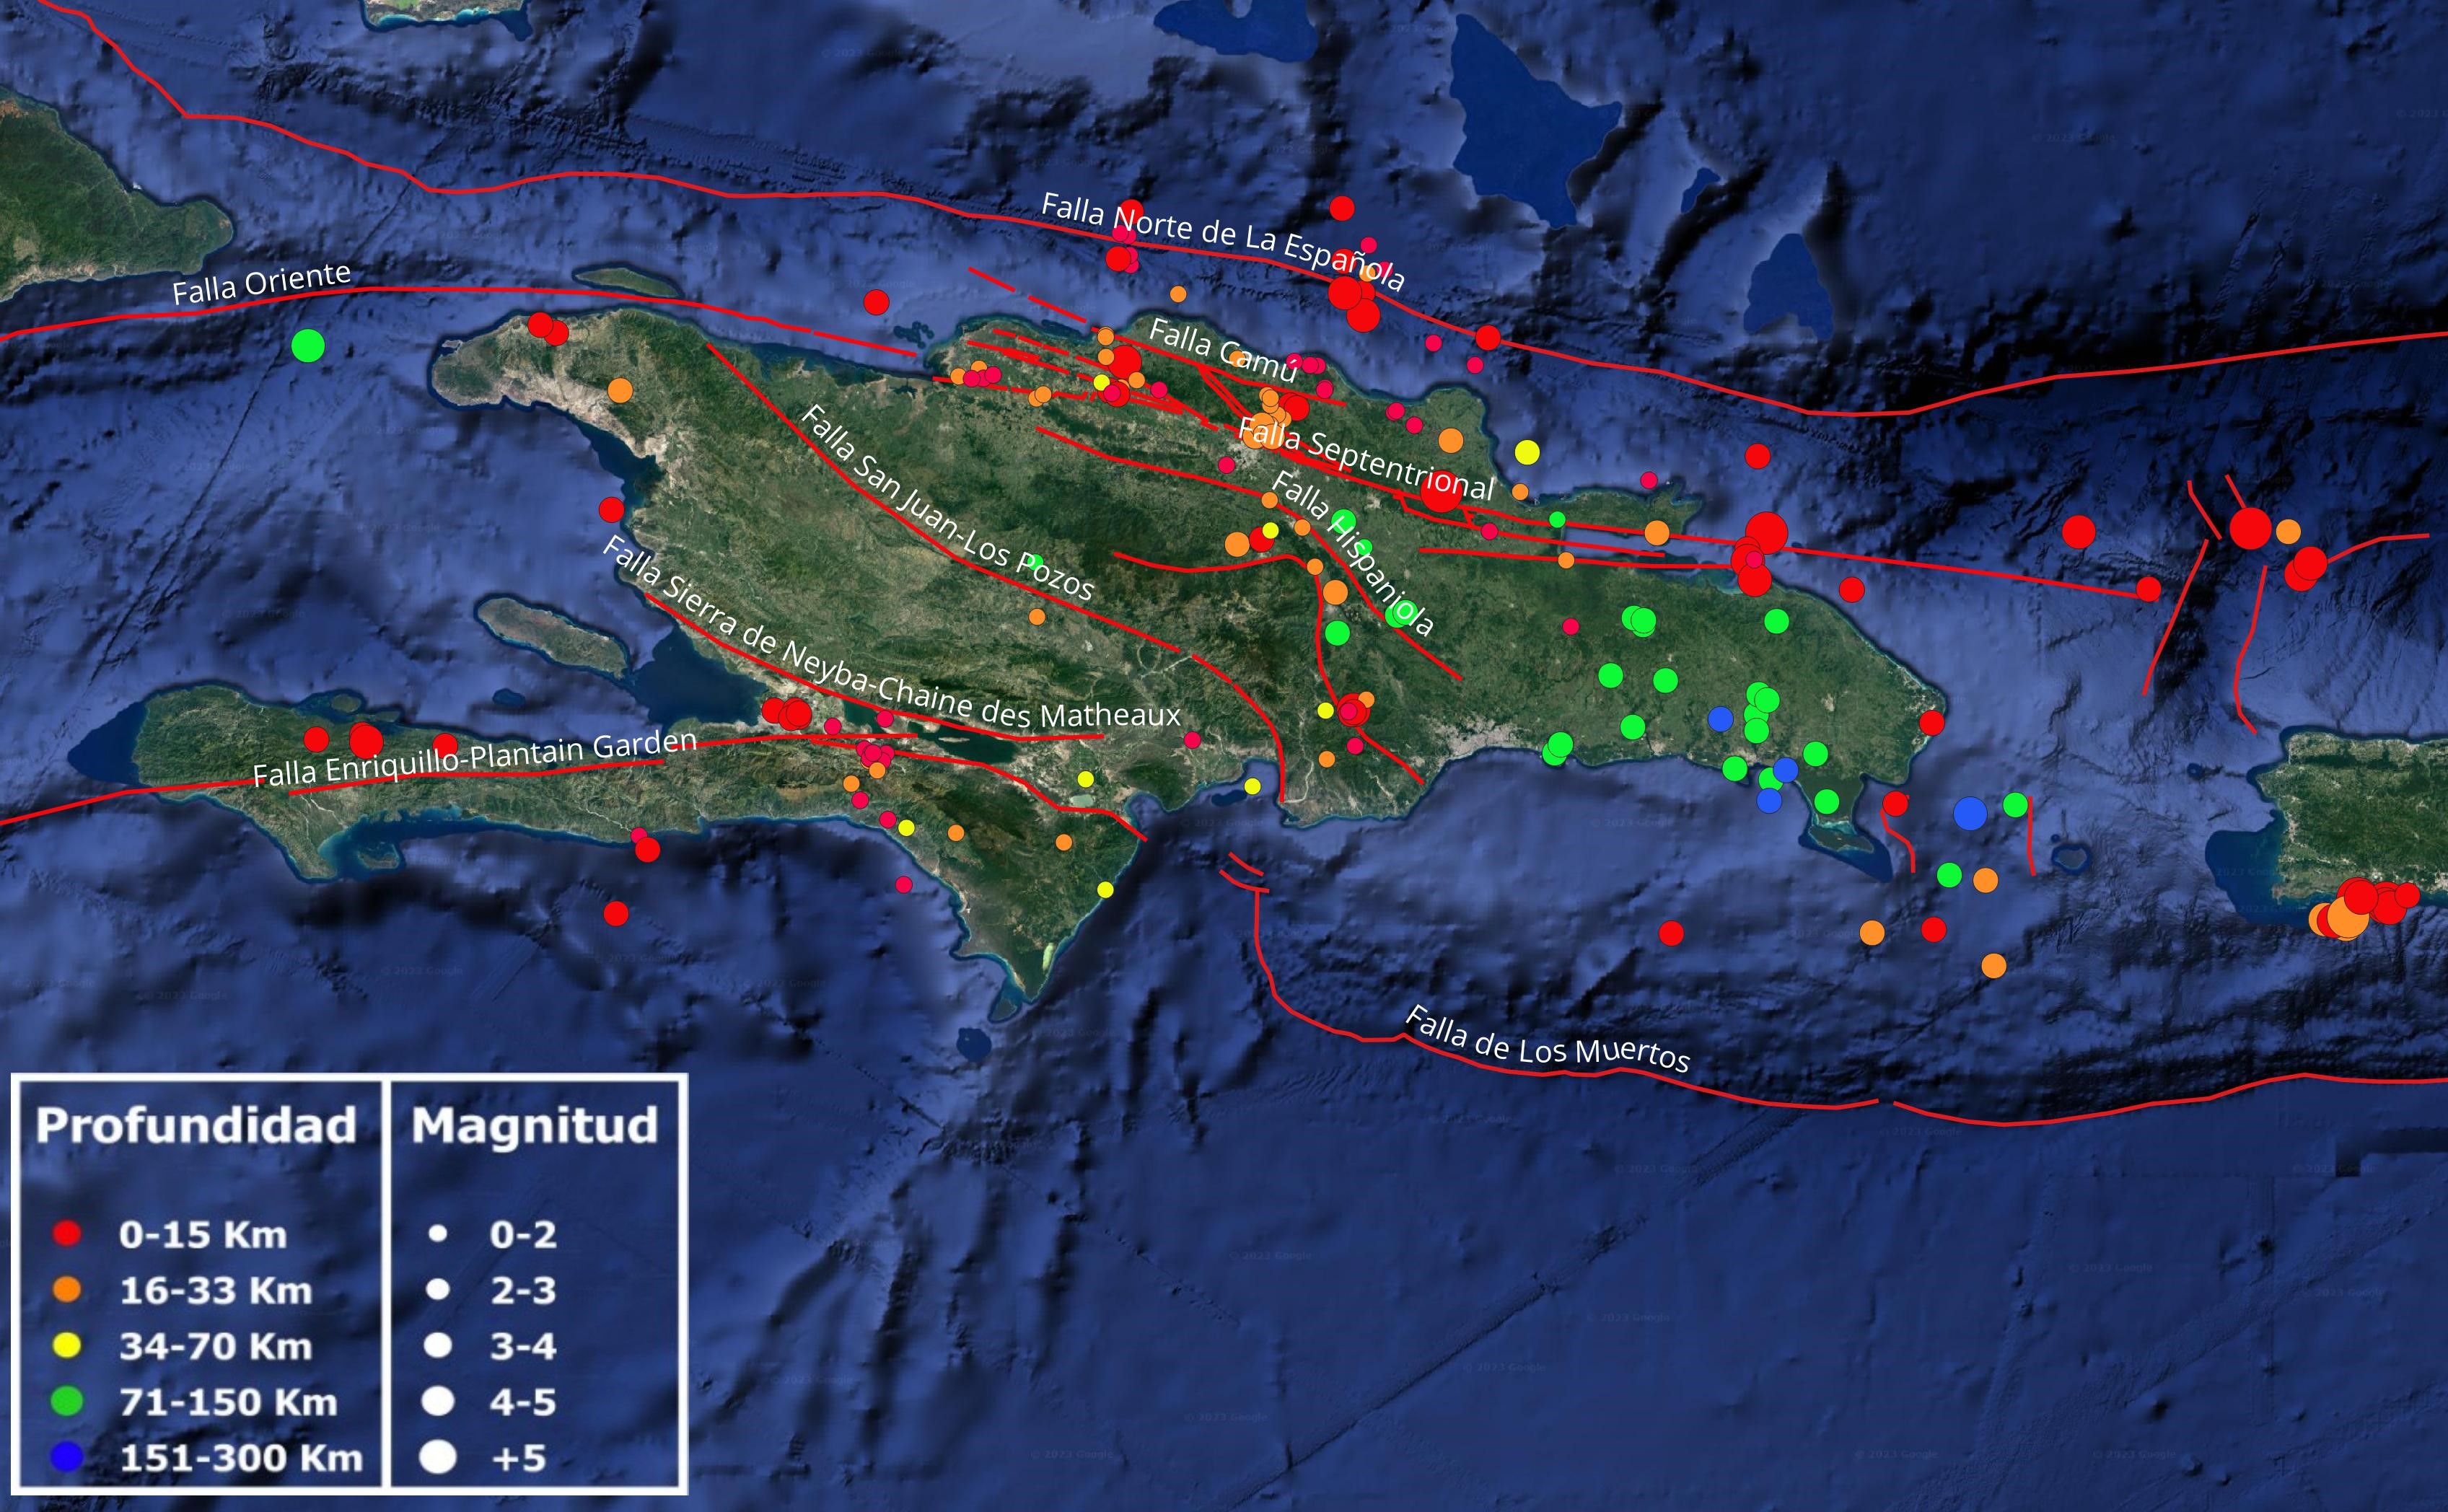 Mapa  mostrando los epicentros del mes de abril. Se indican con líneas rojas las principales fallas activas de nuestra región.